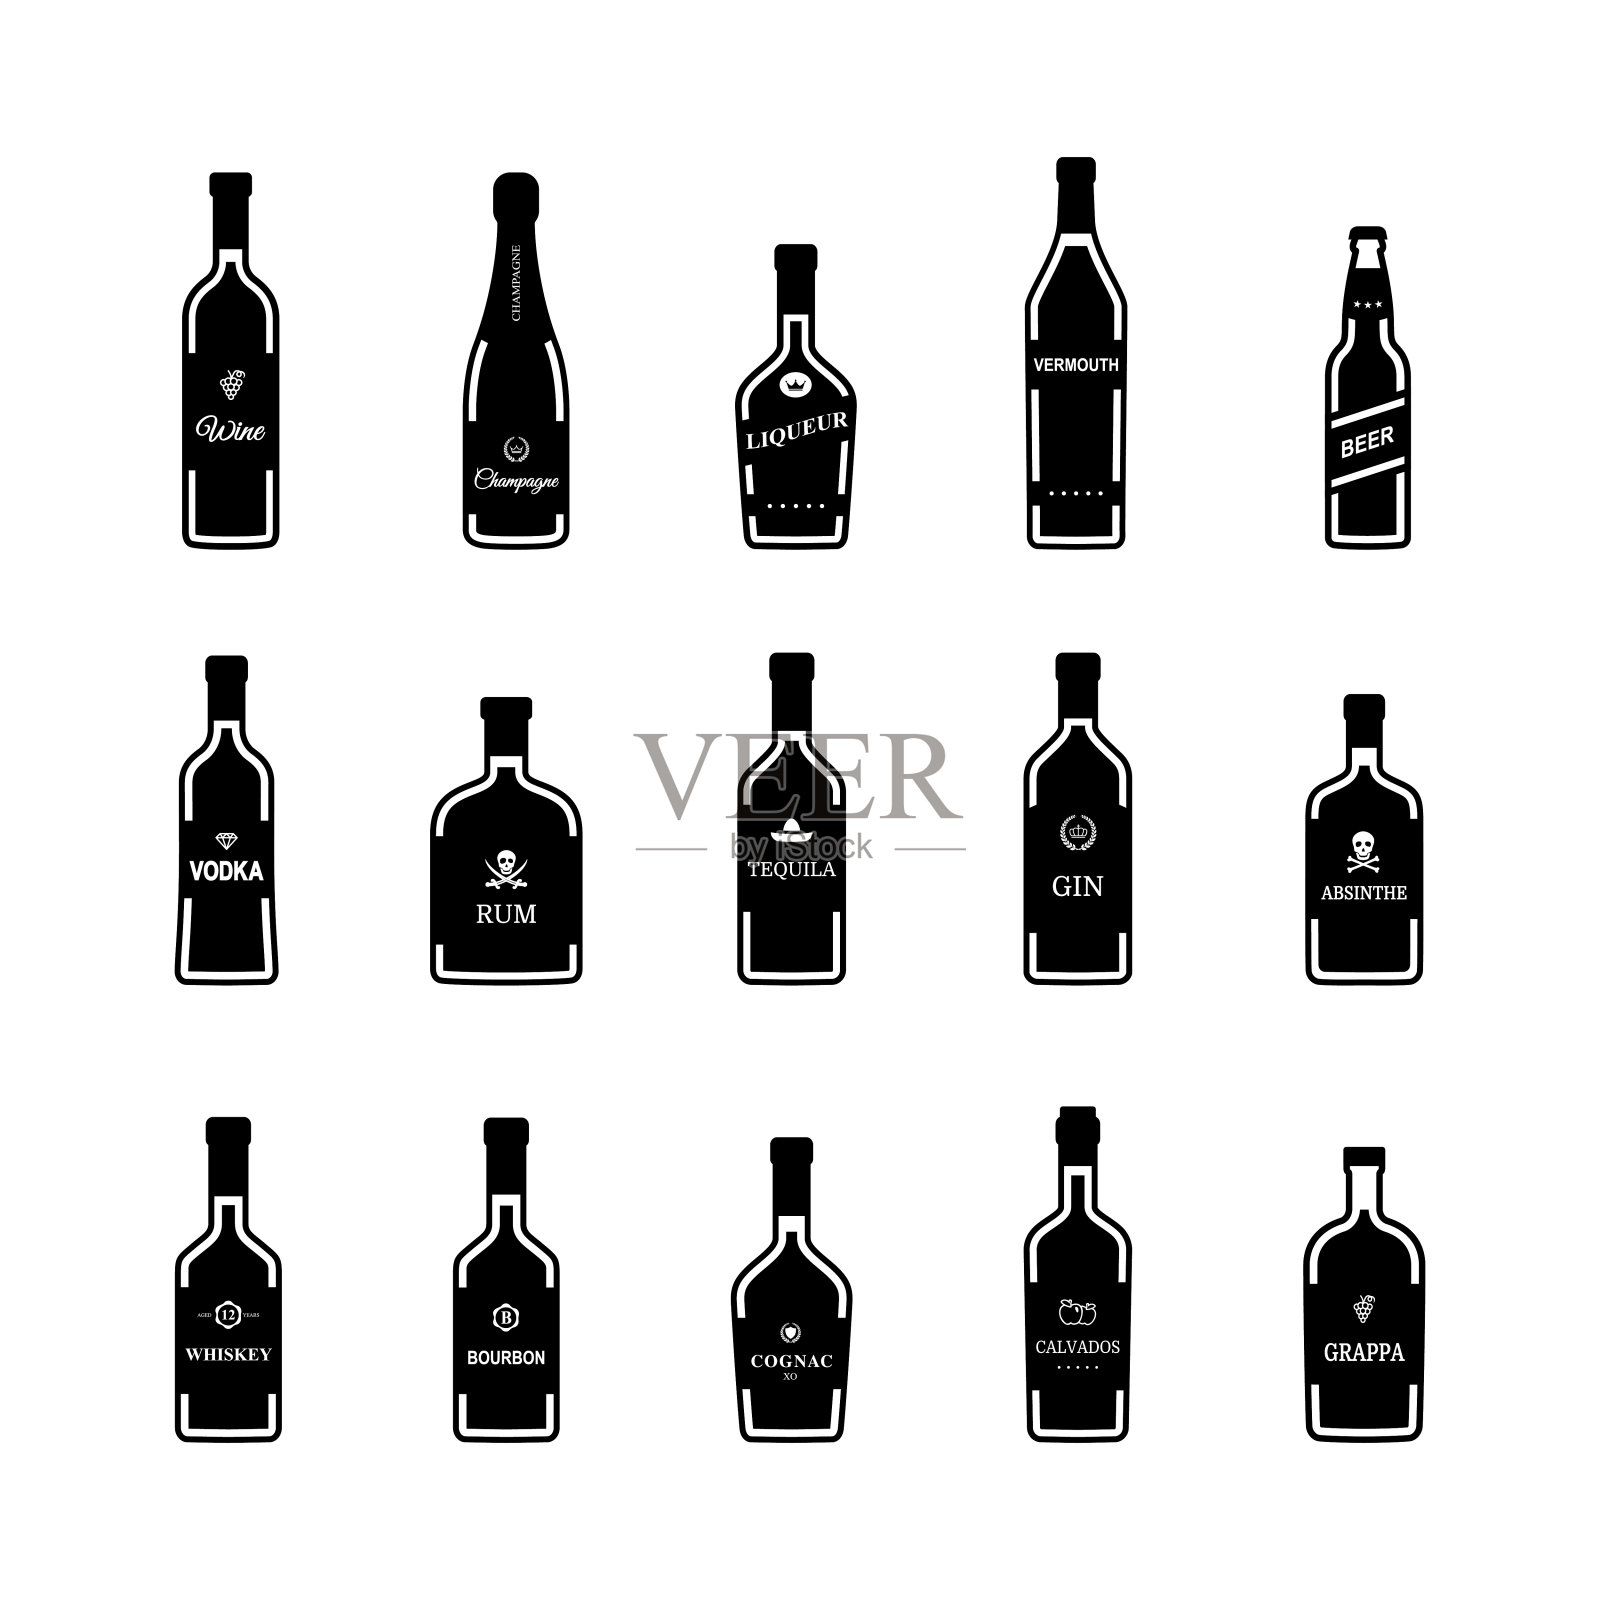 白色背景上的黑色酒瓶图标。向量图标素材